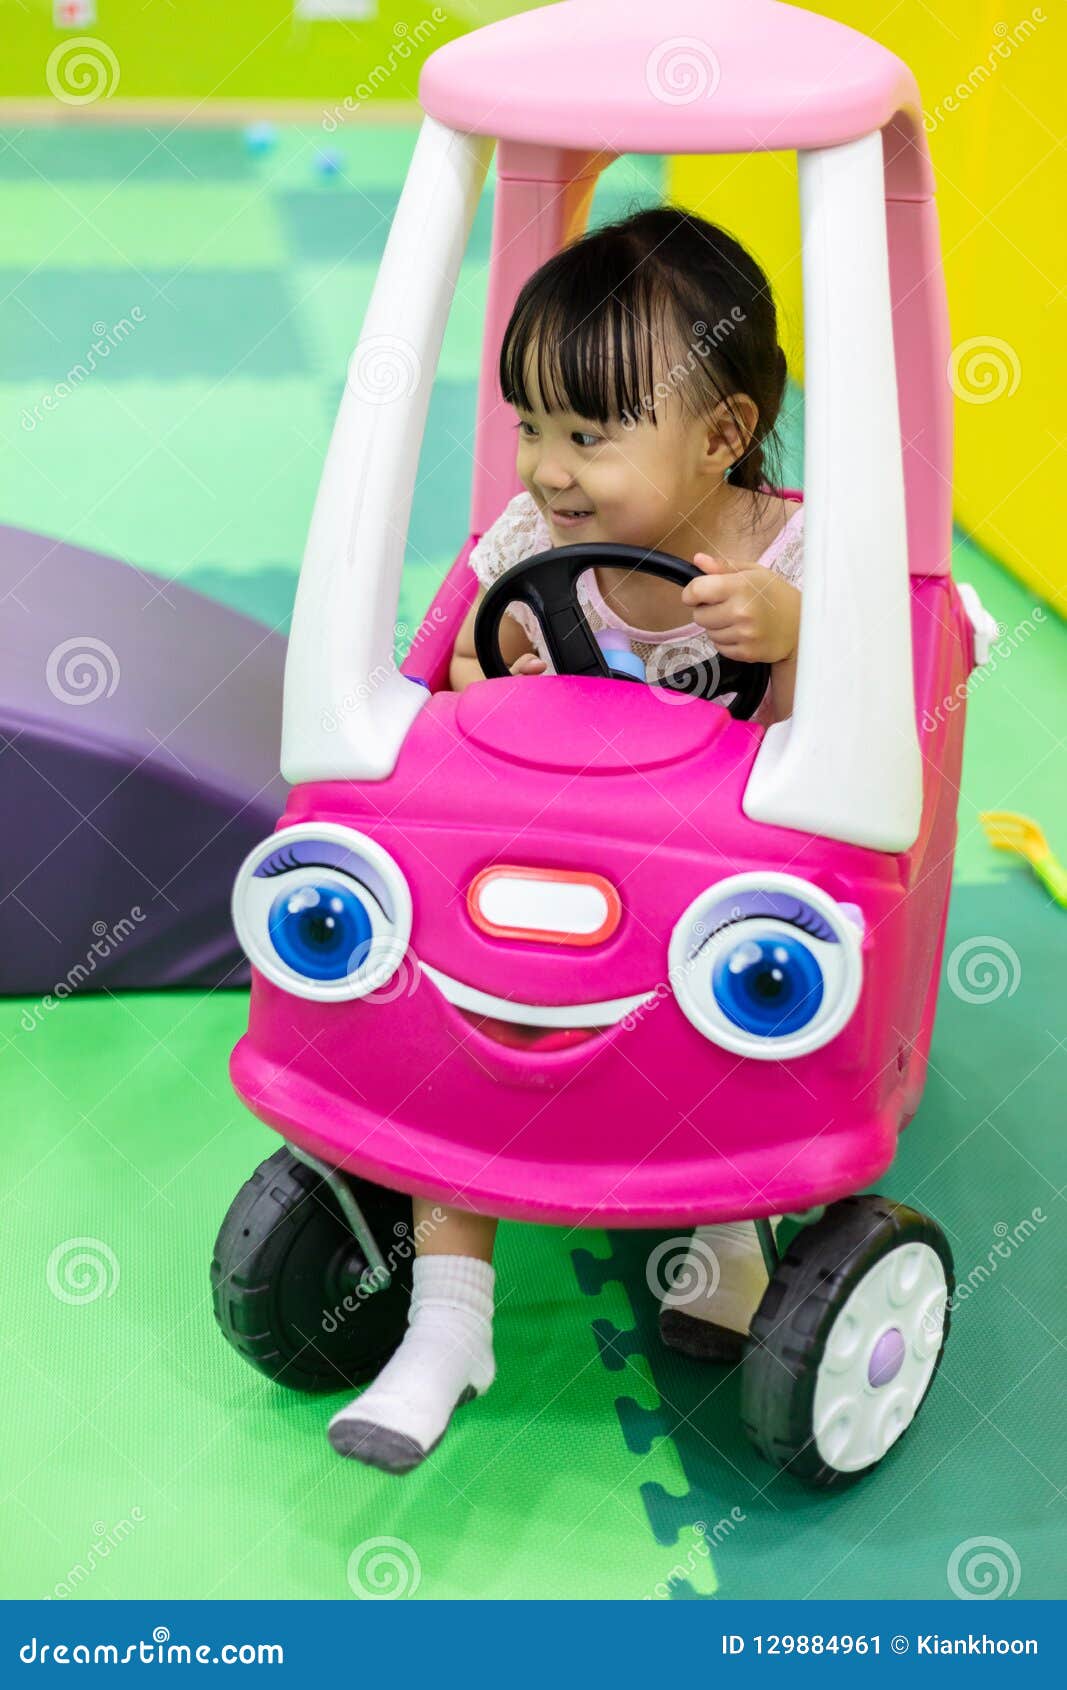 petite voiture pour fille jouet